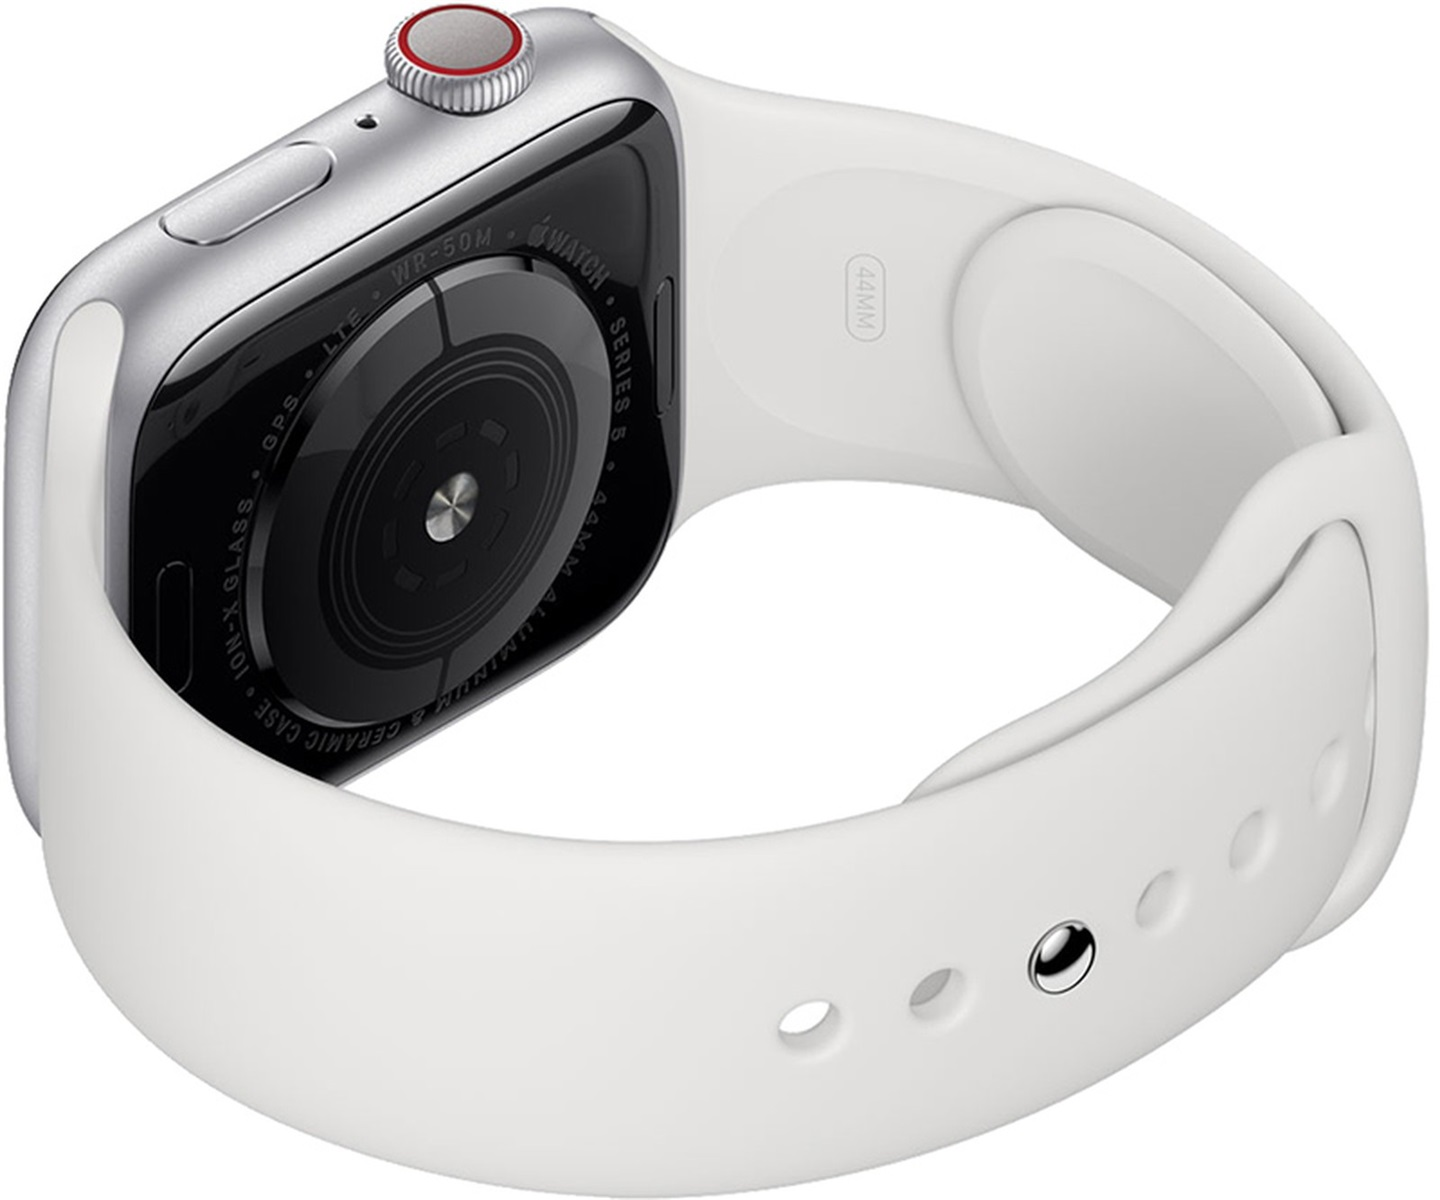 即将发布的第六代 Apple Watch 将具备血氧监测功能